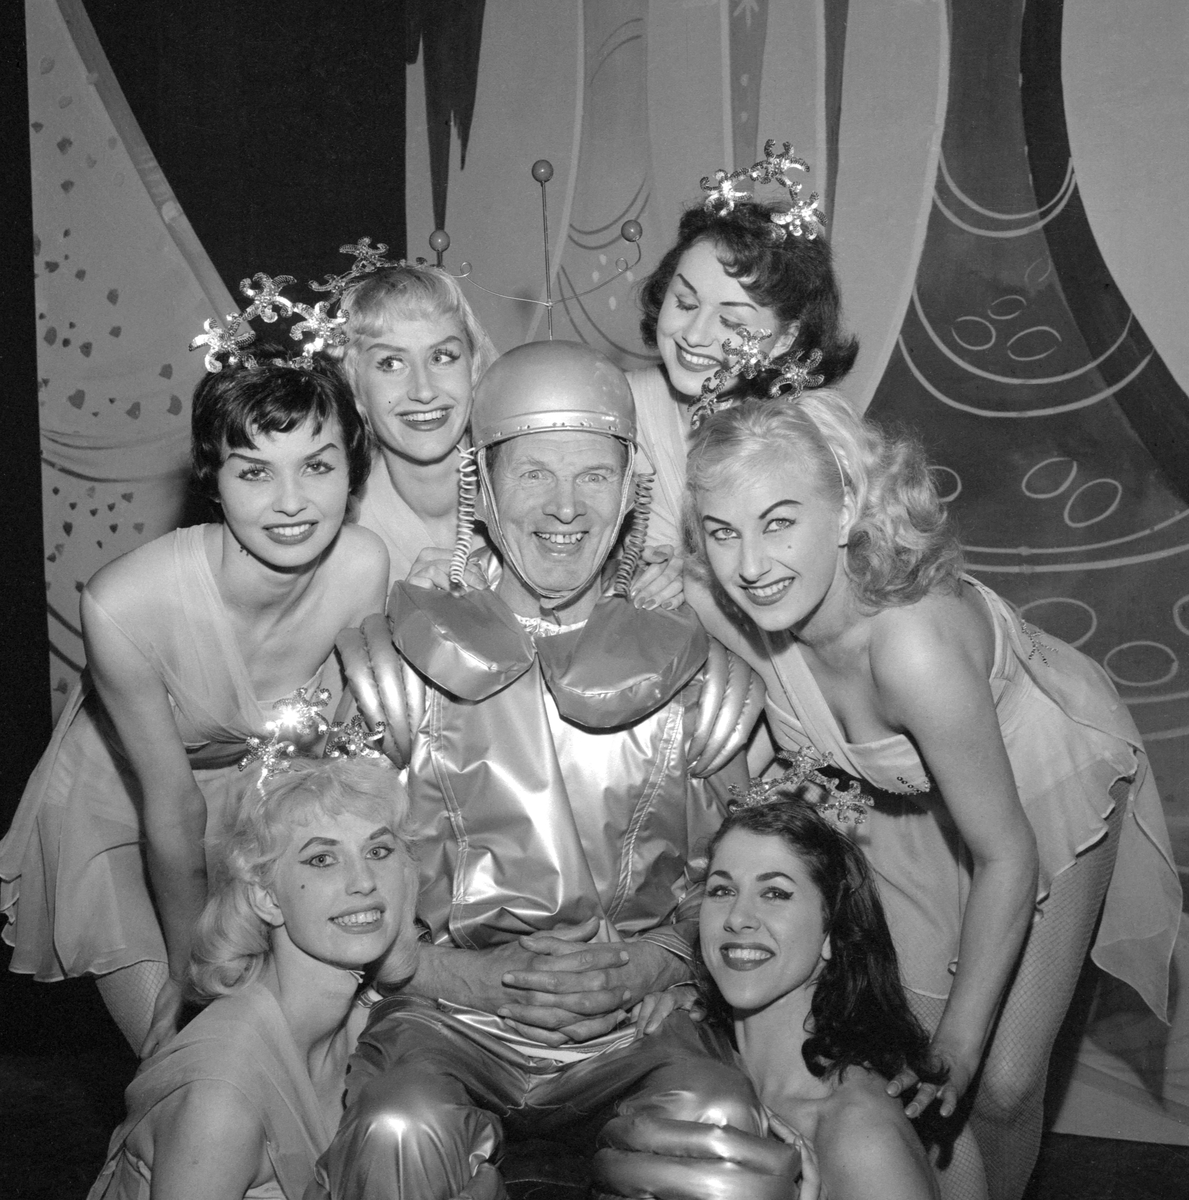 Ett besynnerligt sceneri som har sin förklaring i 1959 års Klangerevy. Gustav Lövås är skrudad för revynumret "Träff på Paradisplaneten" och omkring sig har han samlat ensemblens dansare, medlemmarna i den internationella balett-truppen Roxy Girls. Bilden är från revyns premiär i Mjölby folkpark.